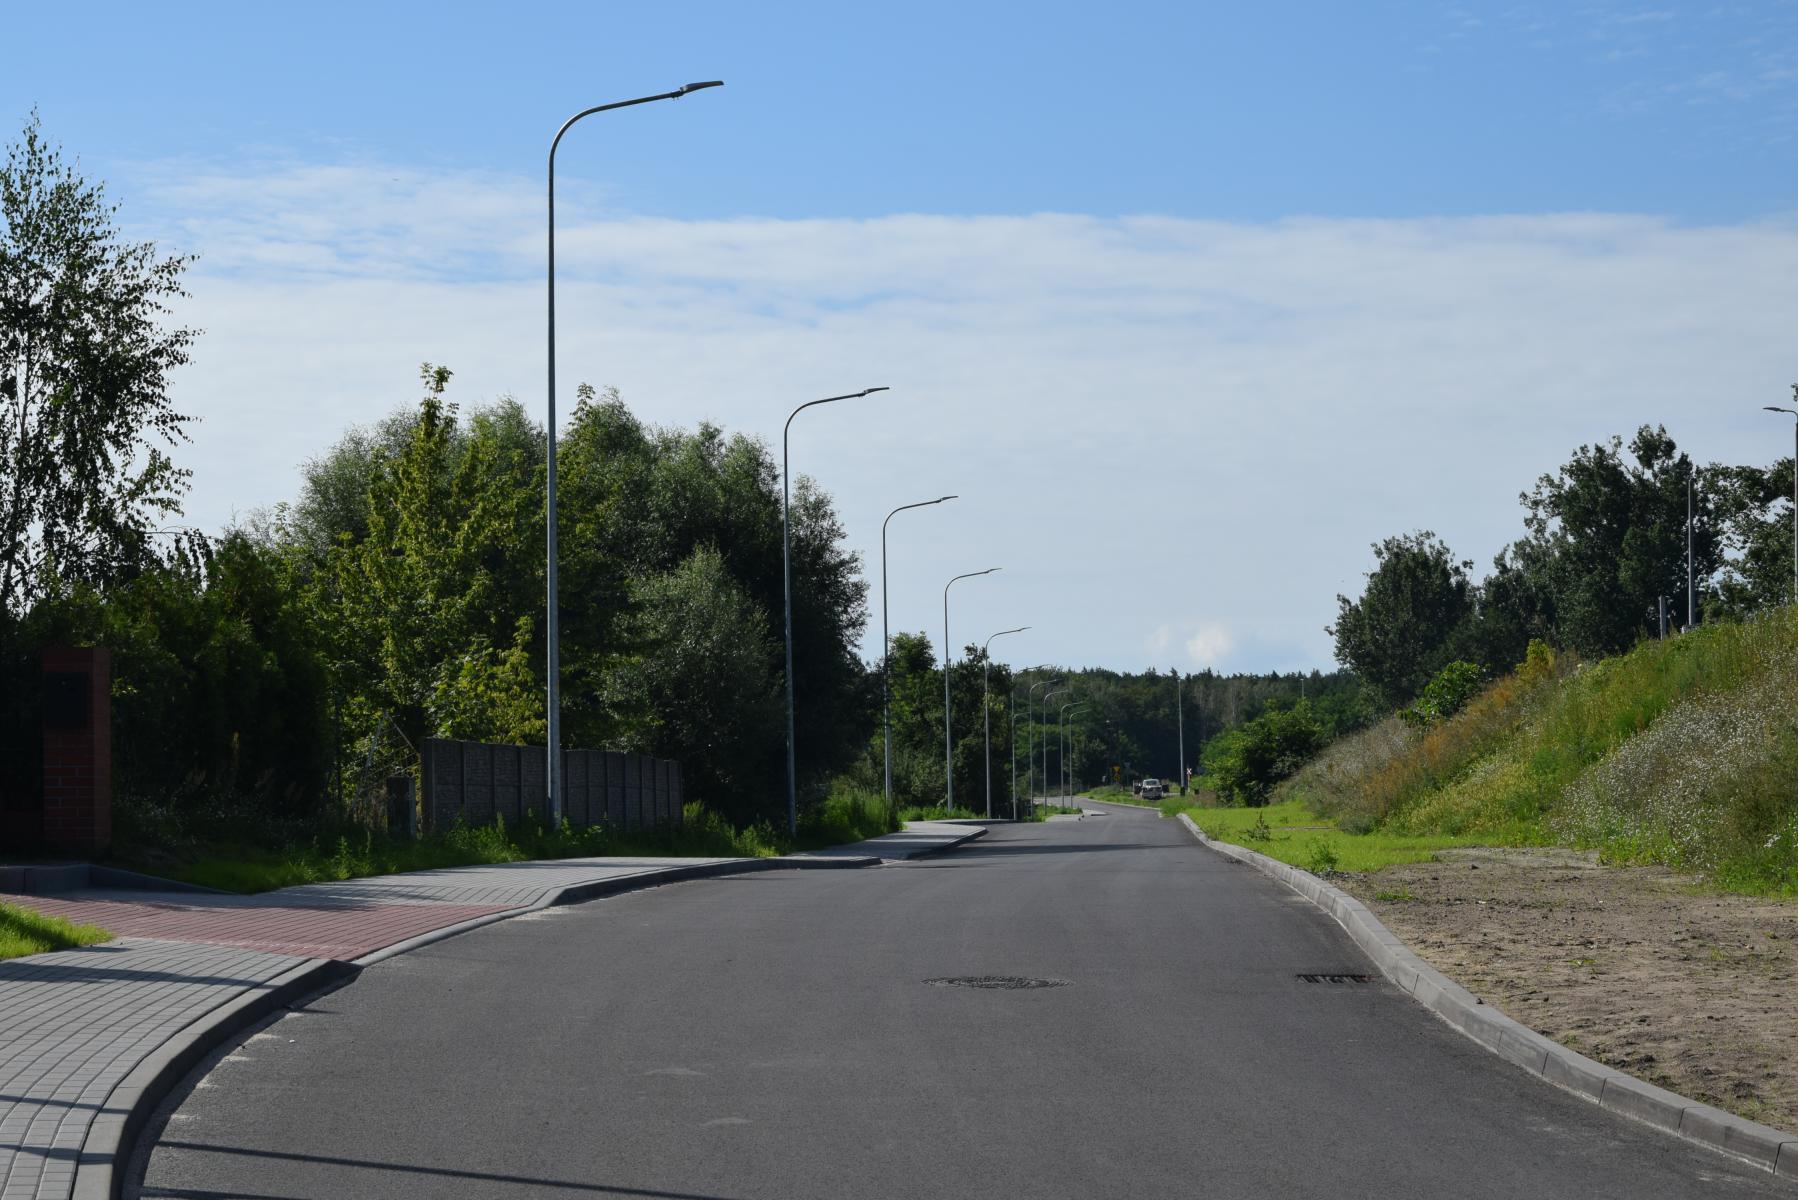 Droga asfaltowa, chodnik jednostronny lampy, zieleń. Ulica Kolejowa 